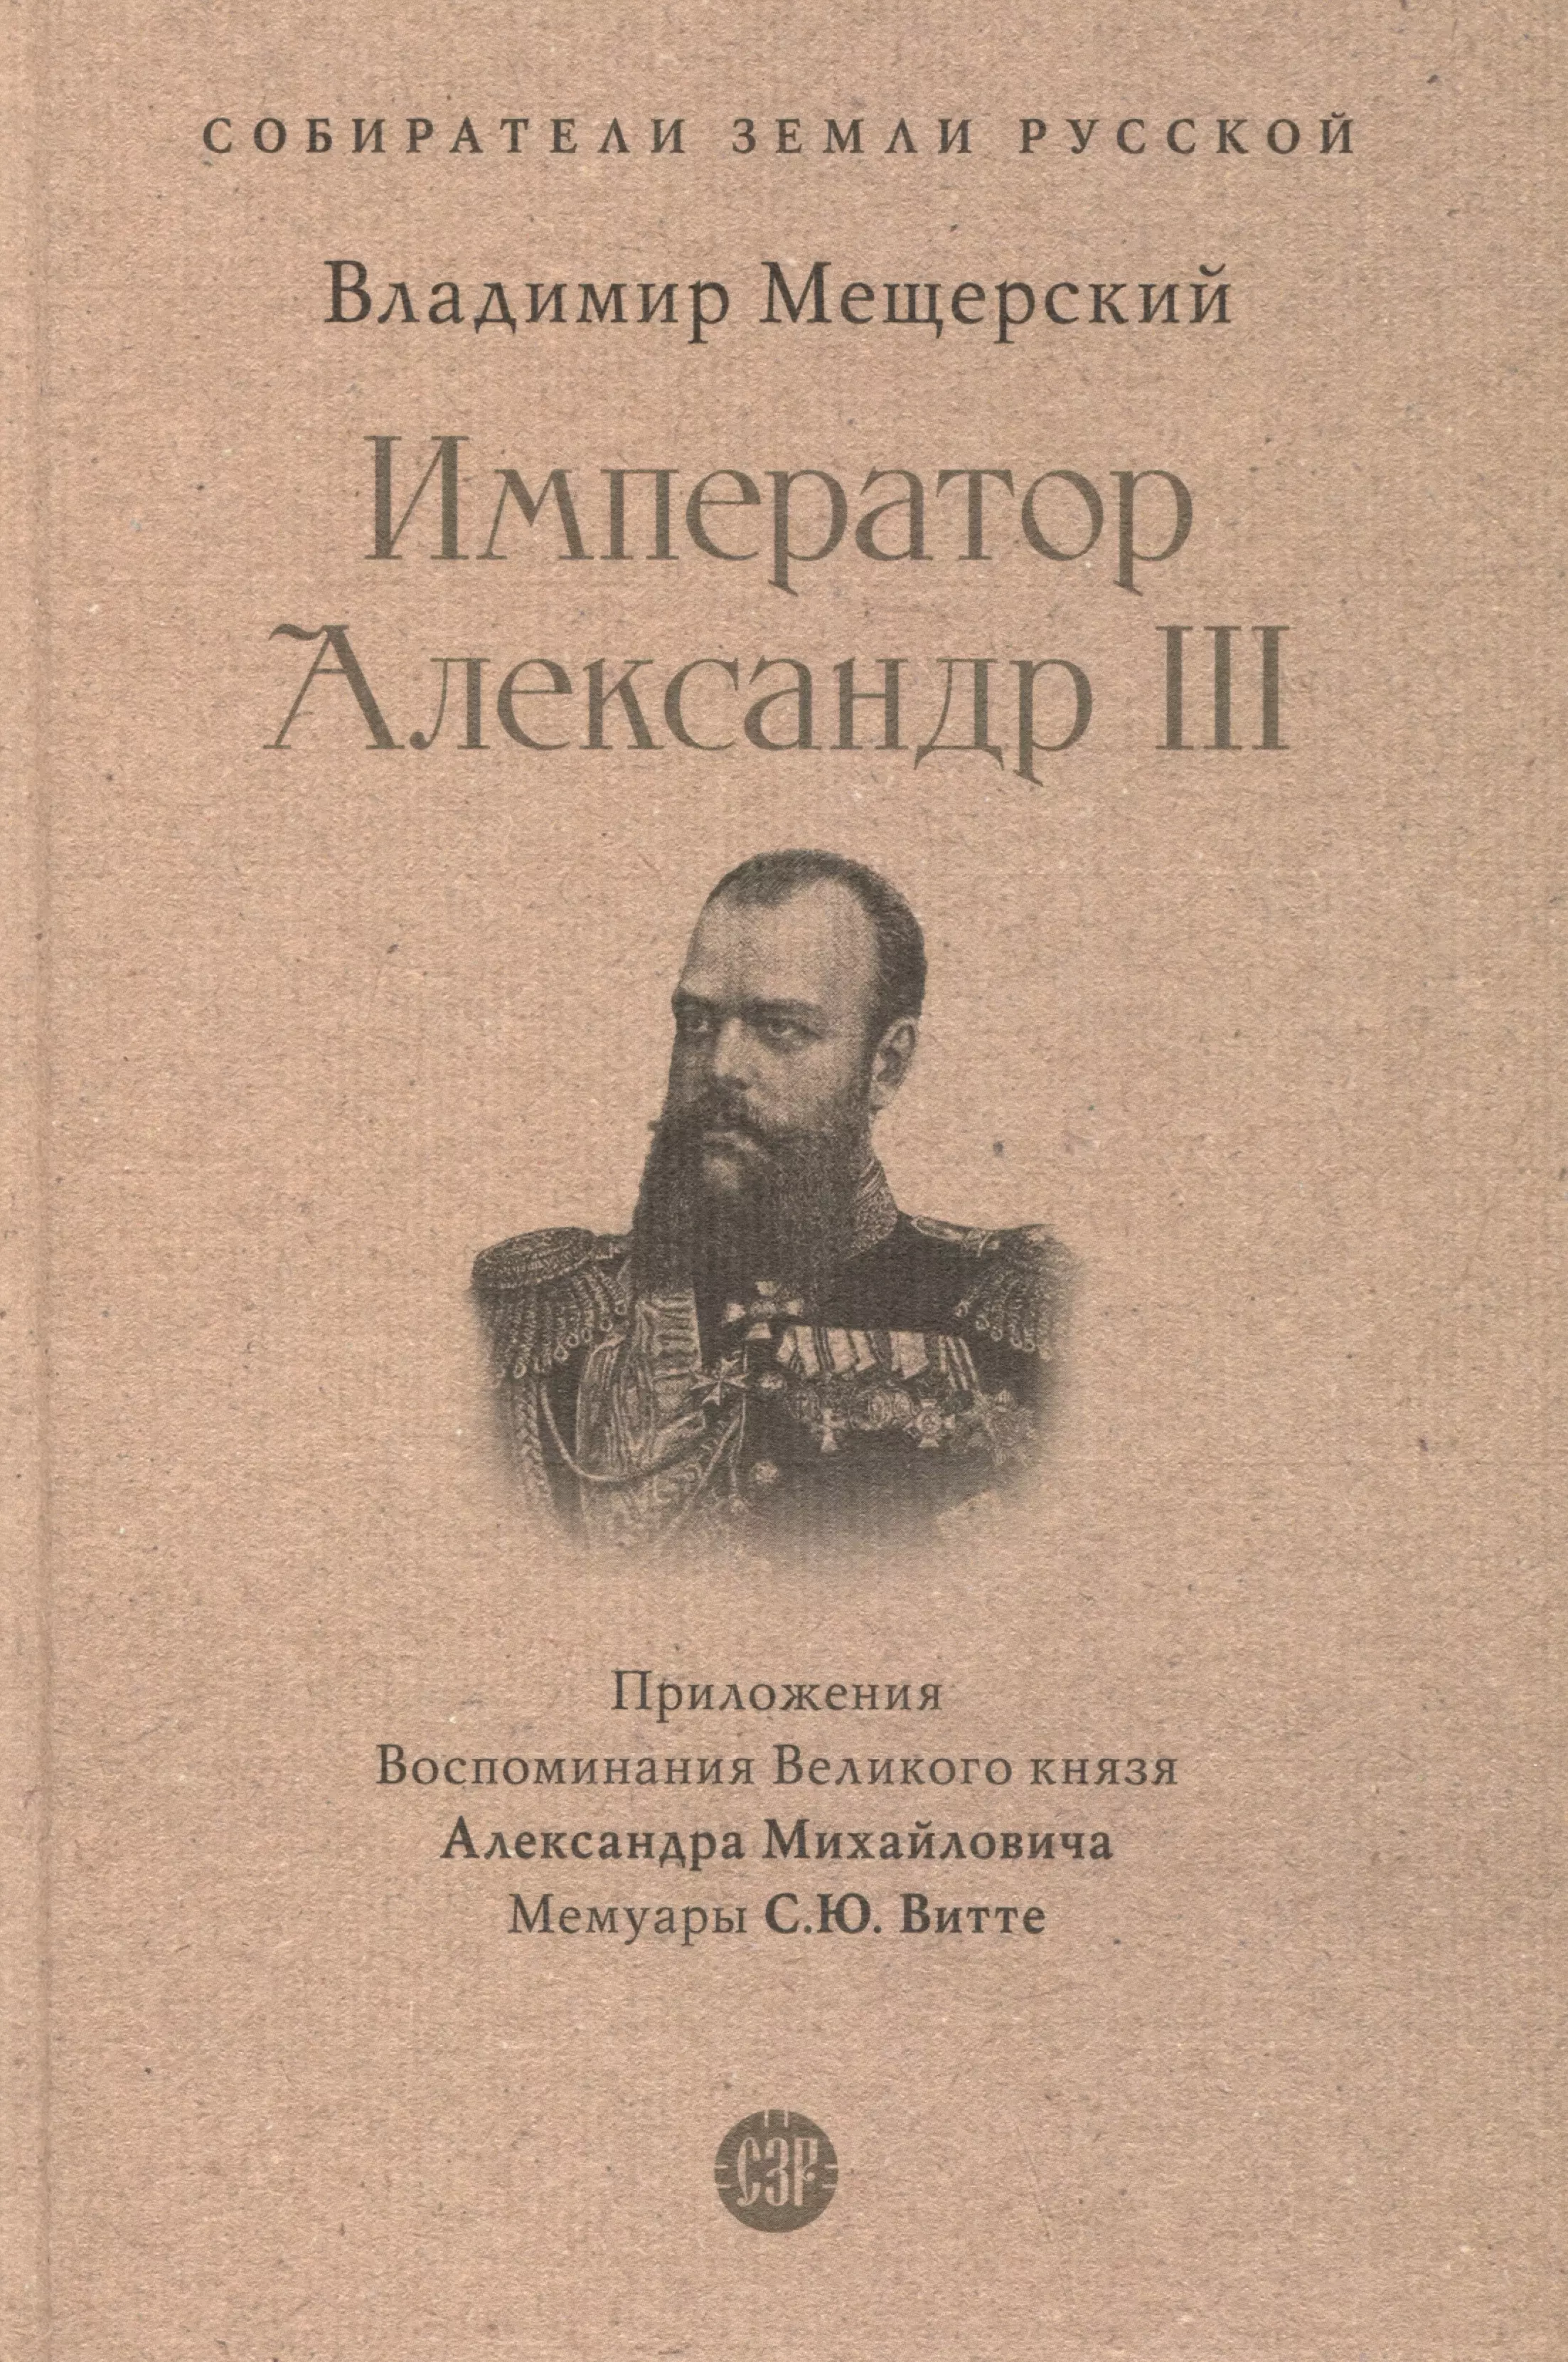 михайлов о александр iii забытый император Император Александр III